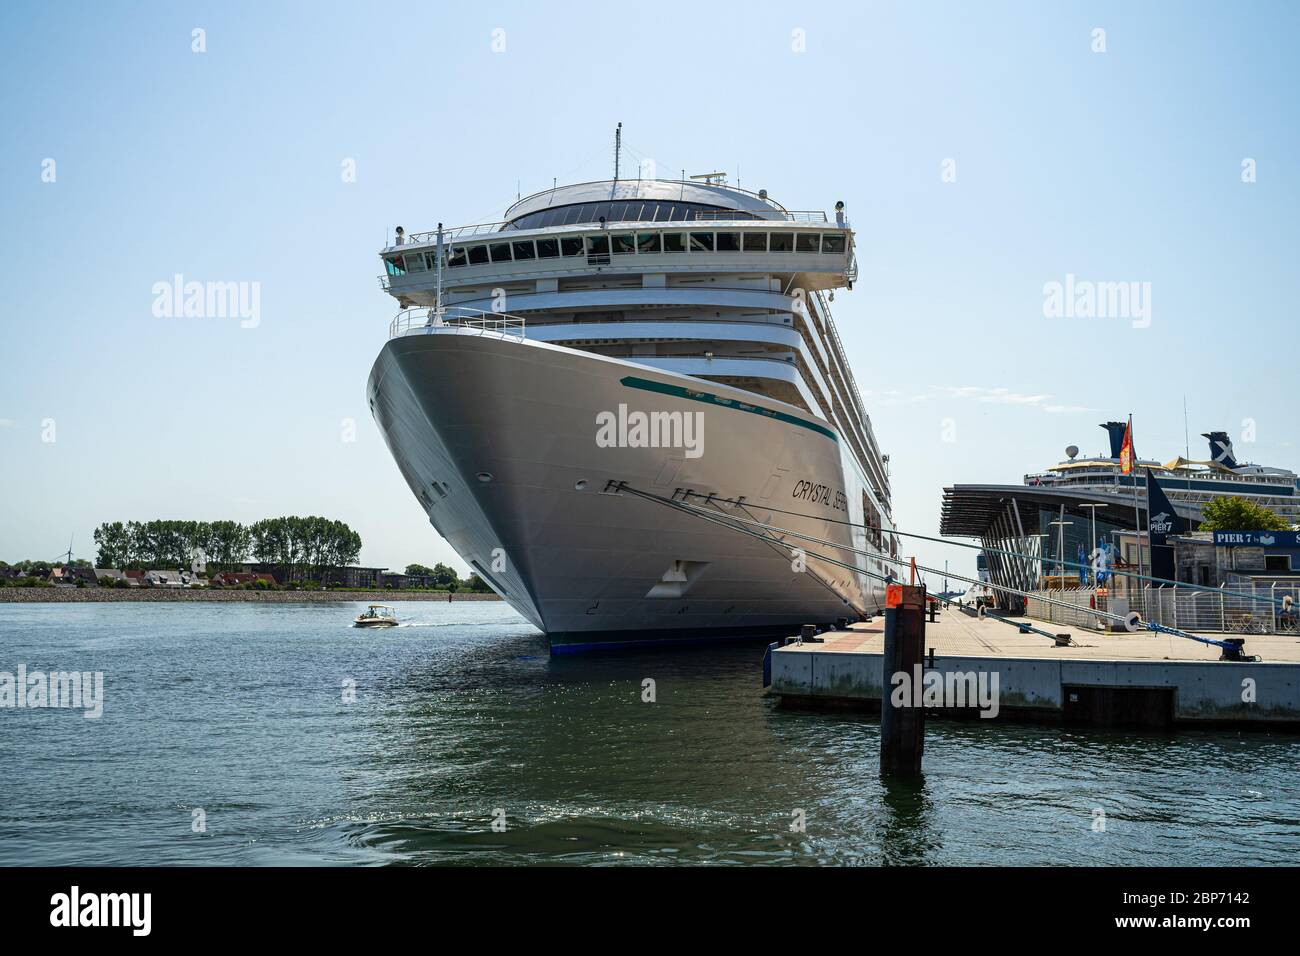 (WARNEMUENDE ROSTOCK), Germania - Luglio 25, 2019: la nave di crociera Crystal serenità al posto di ormeggio Warnemuende nella zona di acqua di Rostock Seaport. Foto Stock